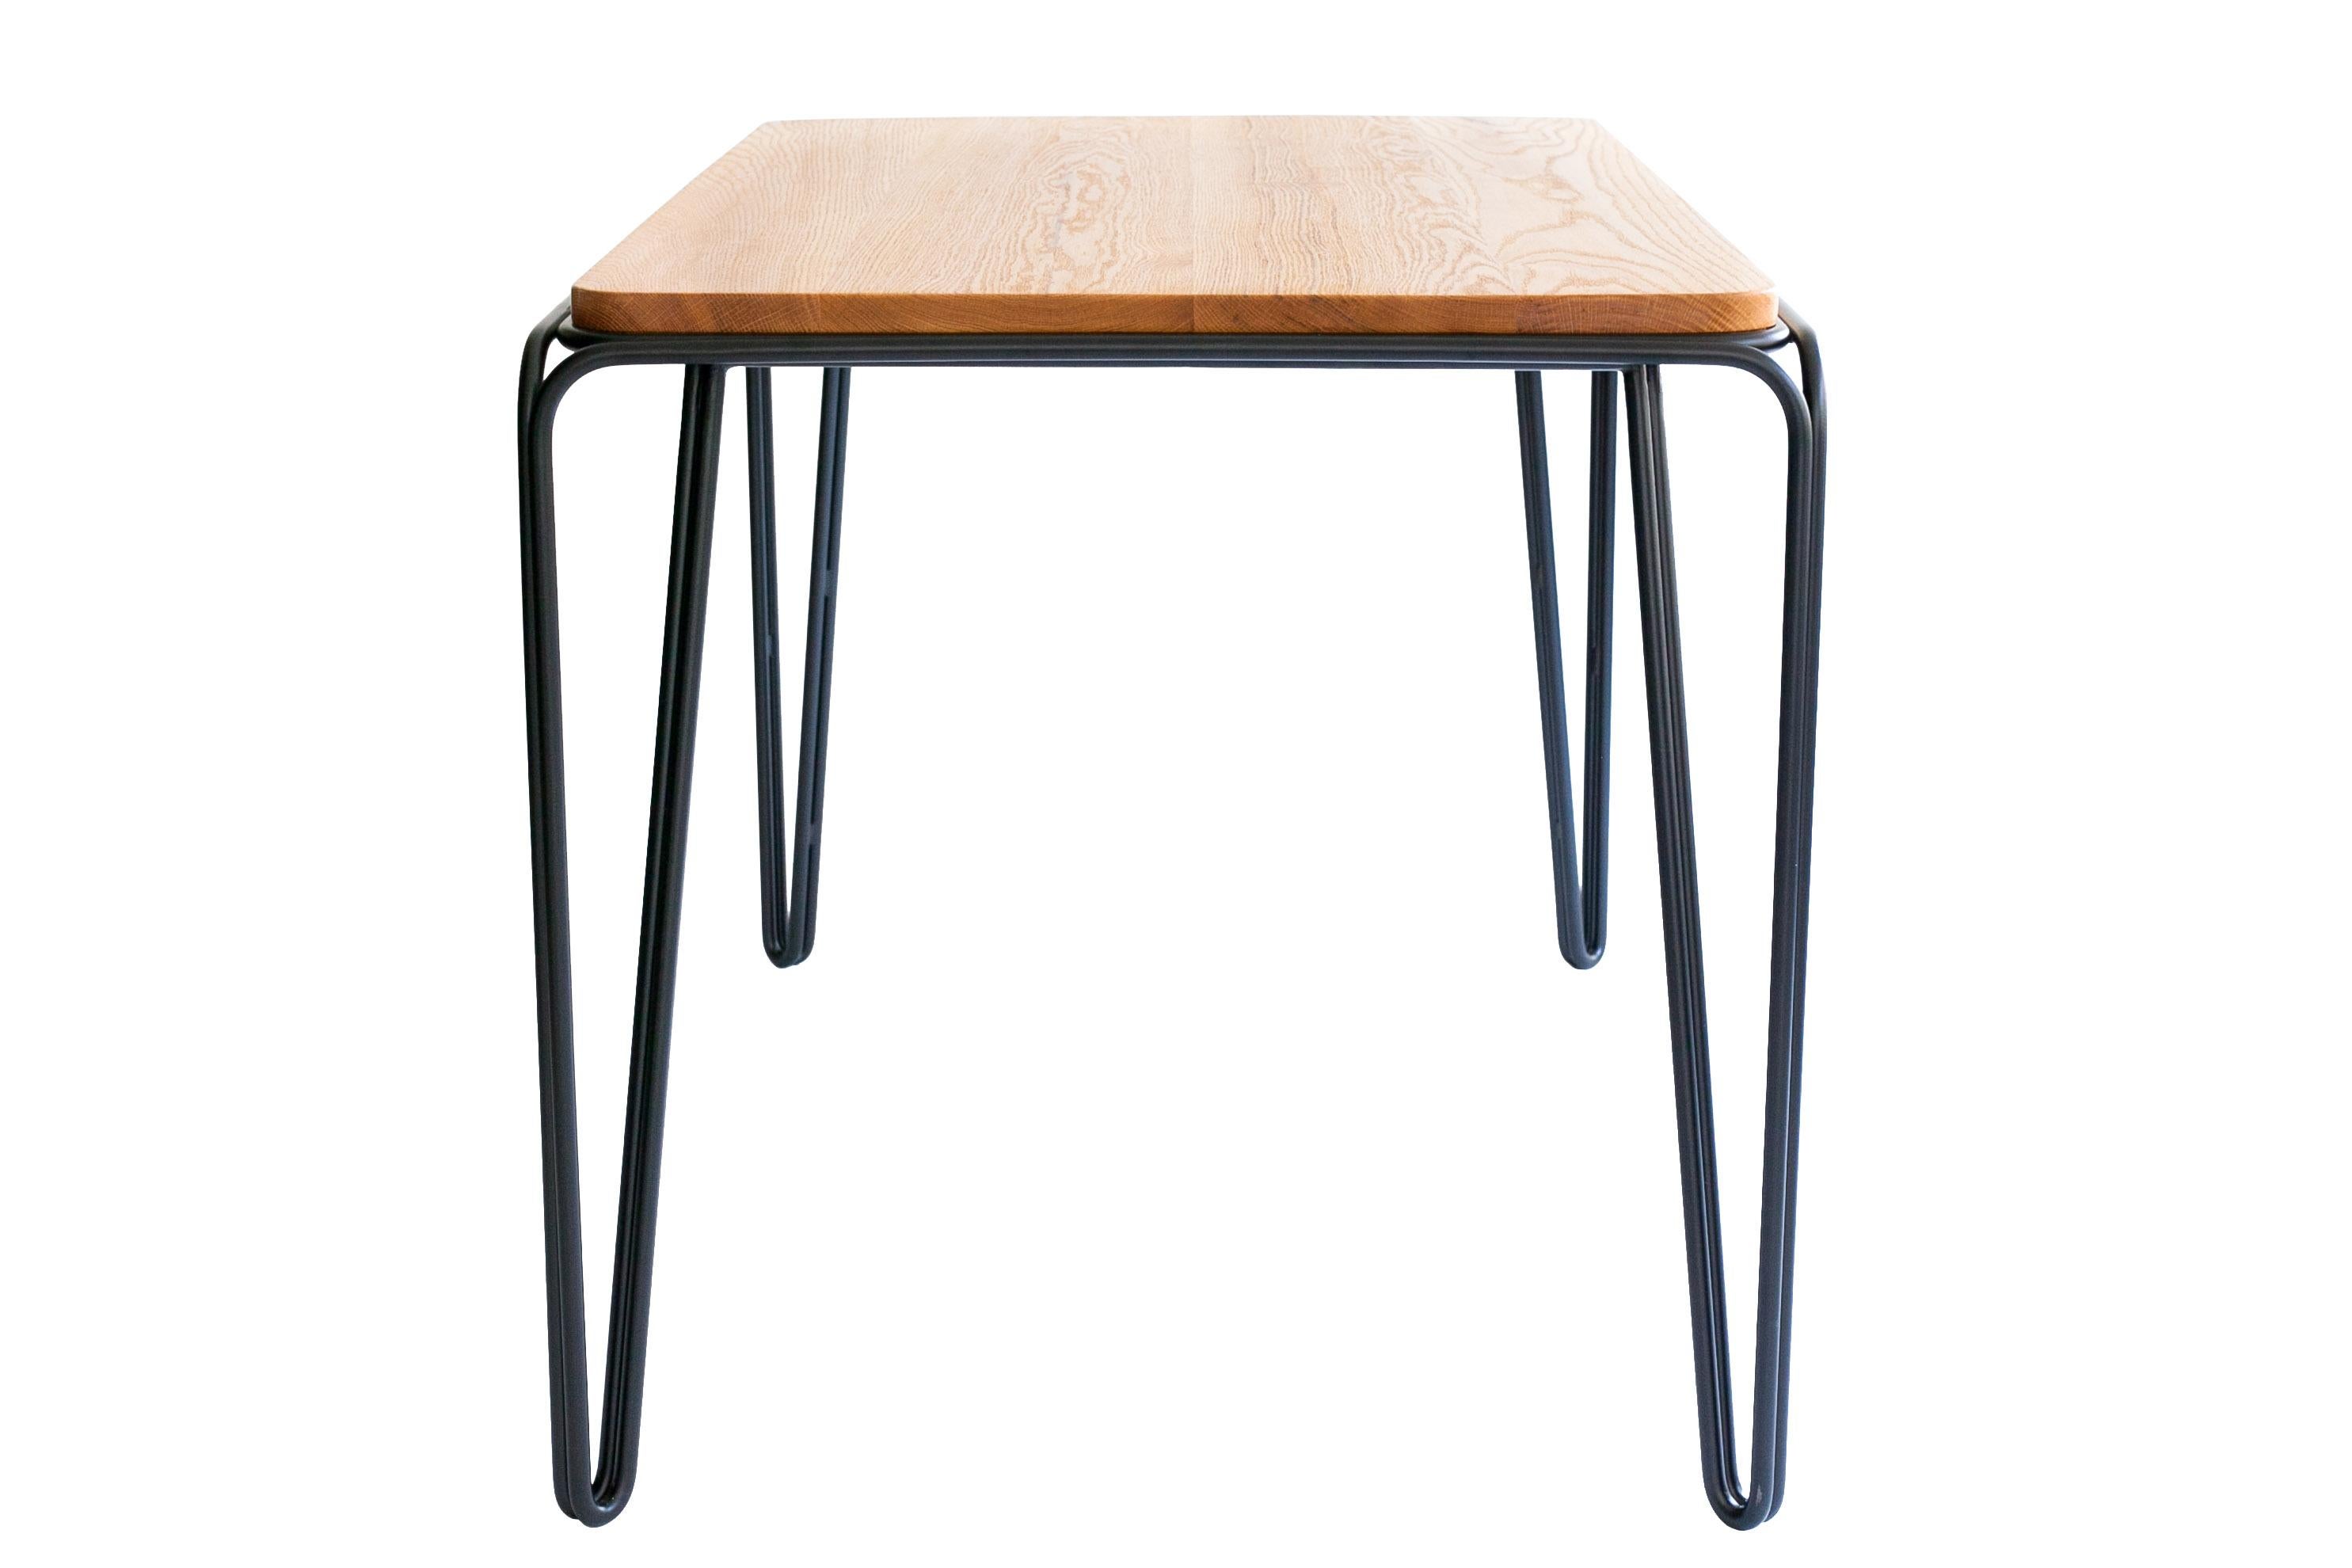 Der Wired-Tisch besteht aus einem minimalen doppelten Drahtgestell aus gebogenem Stahl, das eine geformte Massivholzplatte trägt.
Die Schlichtheit des Designs wird durch die kantigen Stahllinien und den unauffälligen Stahlrahmen unterstrichen.
Der